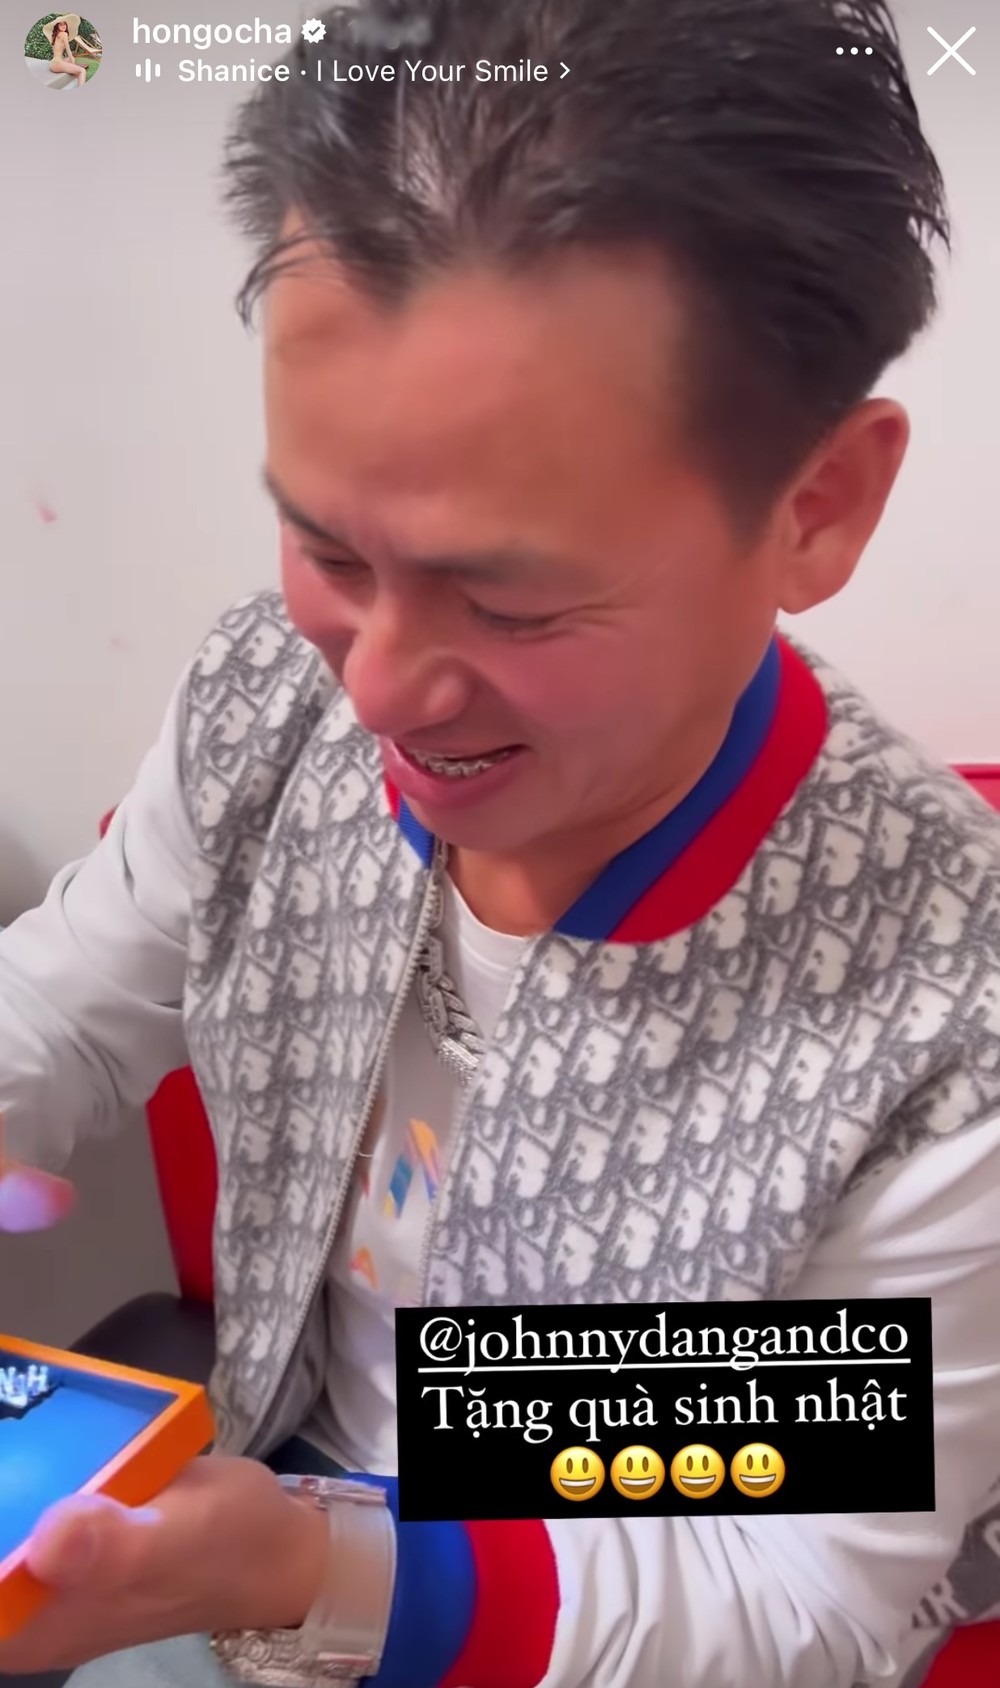 Hết làm răng bọc kim cương, Johnny Đặng tặng quà sinh nhật khắc tên riêng cho Hà Hồ - ảnh 3